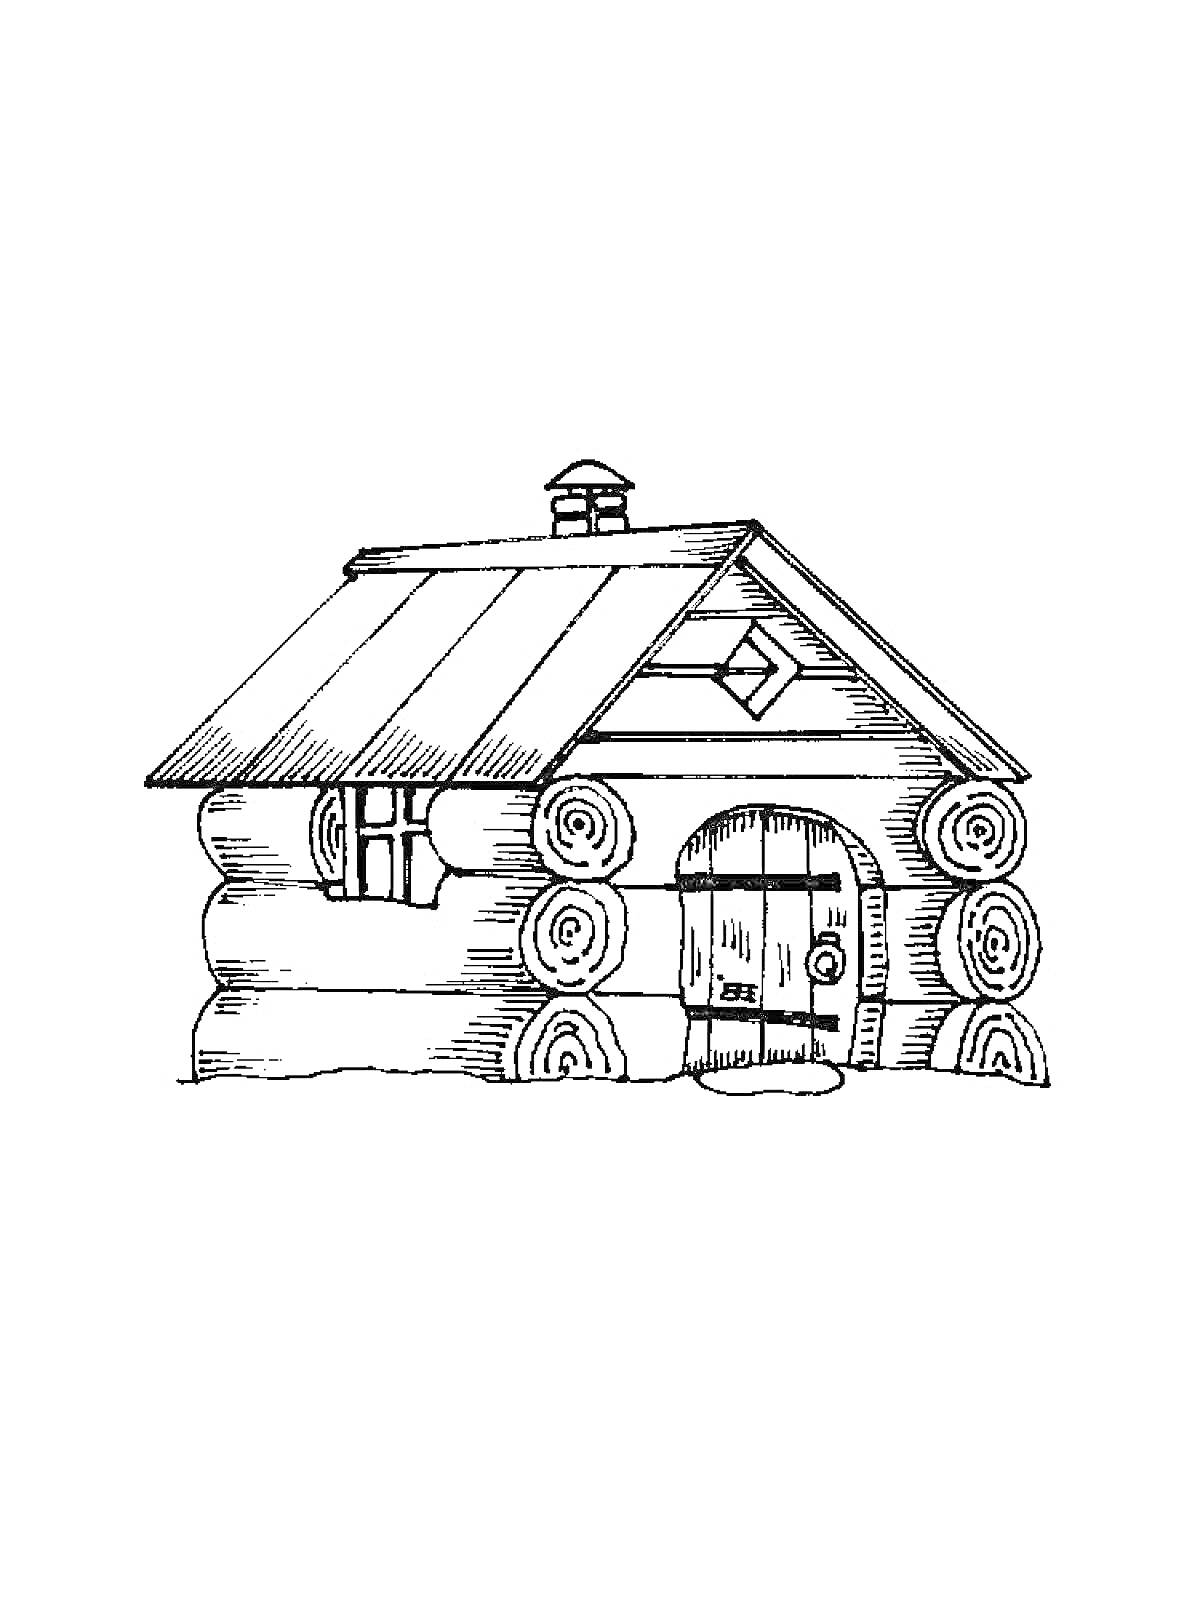 Деревянная изба с бревенчатыми стенами, двускатной крышей, дверью с арочным верхом и небольшим окном под крышей.